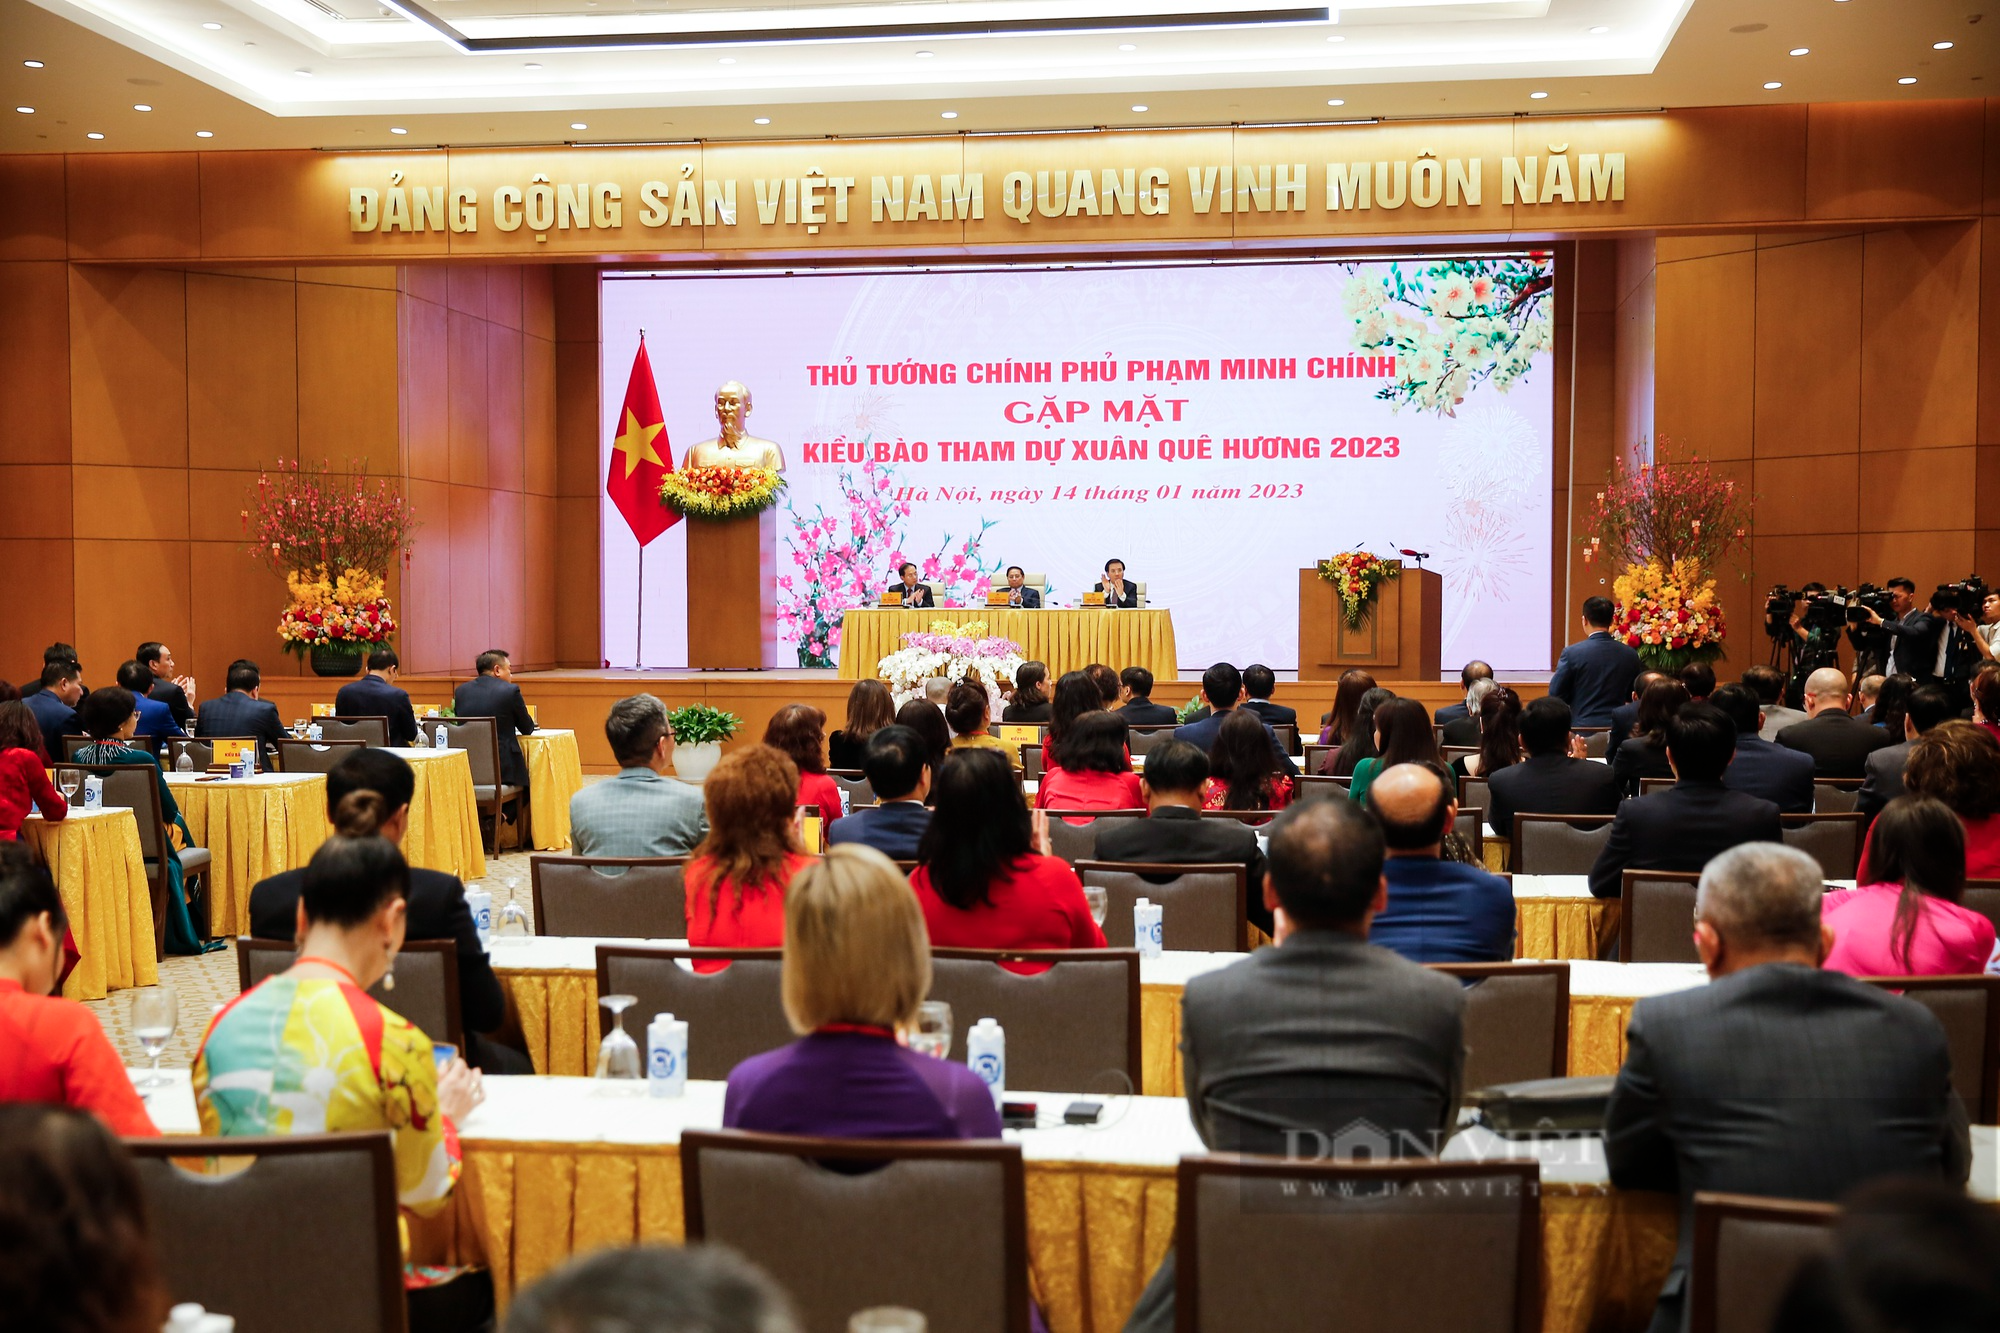 Thủ tướng Phạm Minh Chính gặp mặt kiều bào tiêu biểu dự Chương trình Xuân Quê hương 2023 - Ảnh 1.